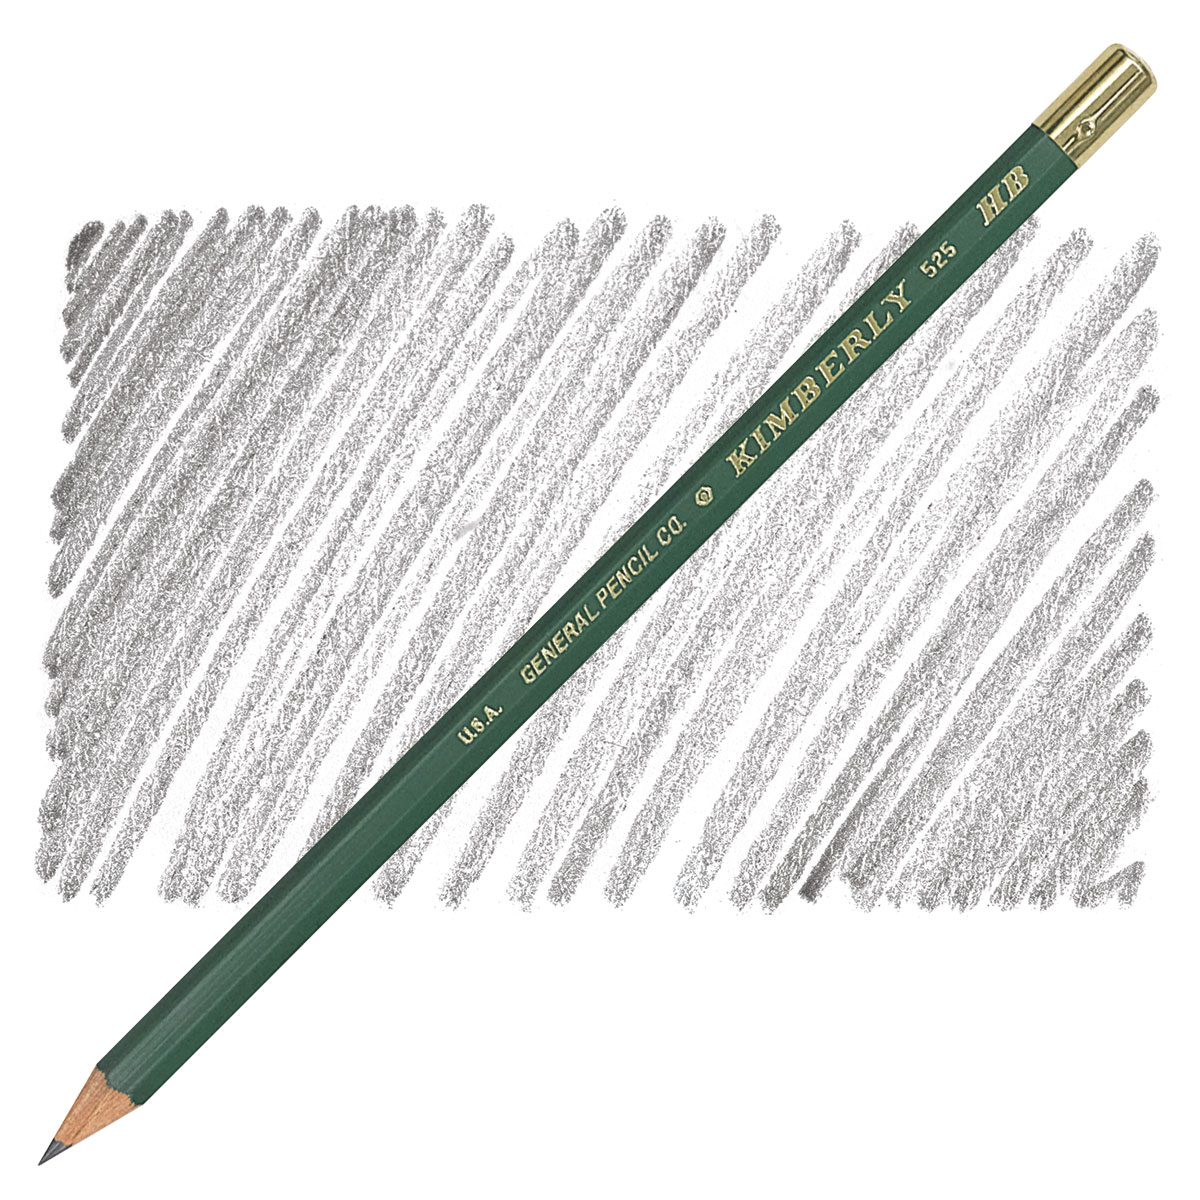  Generals Drawing Pencils HB - Pack of 12 : Arts